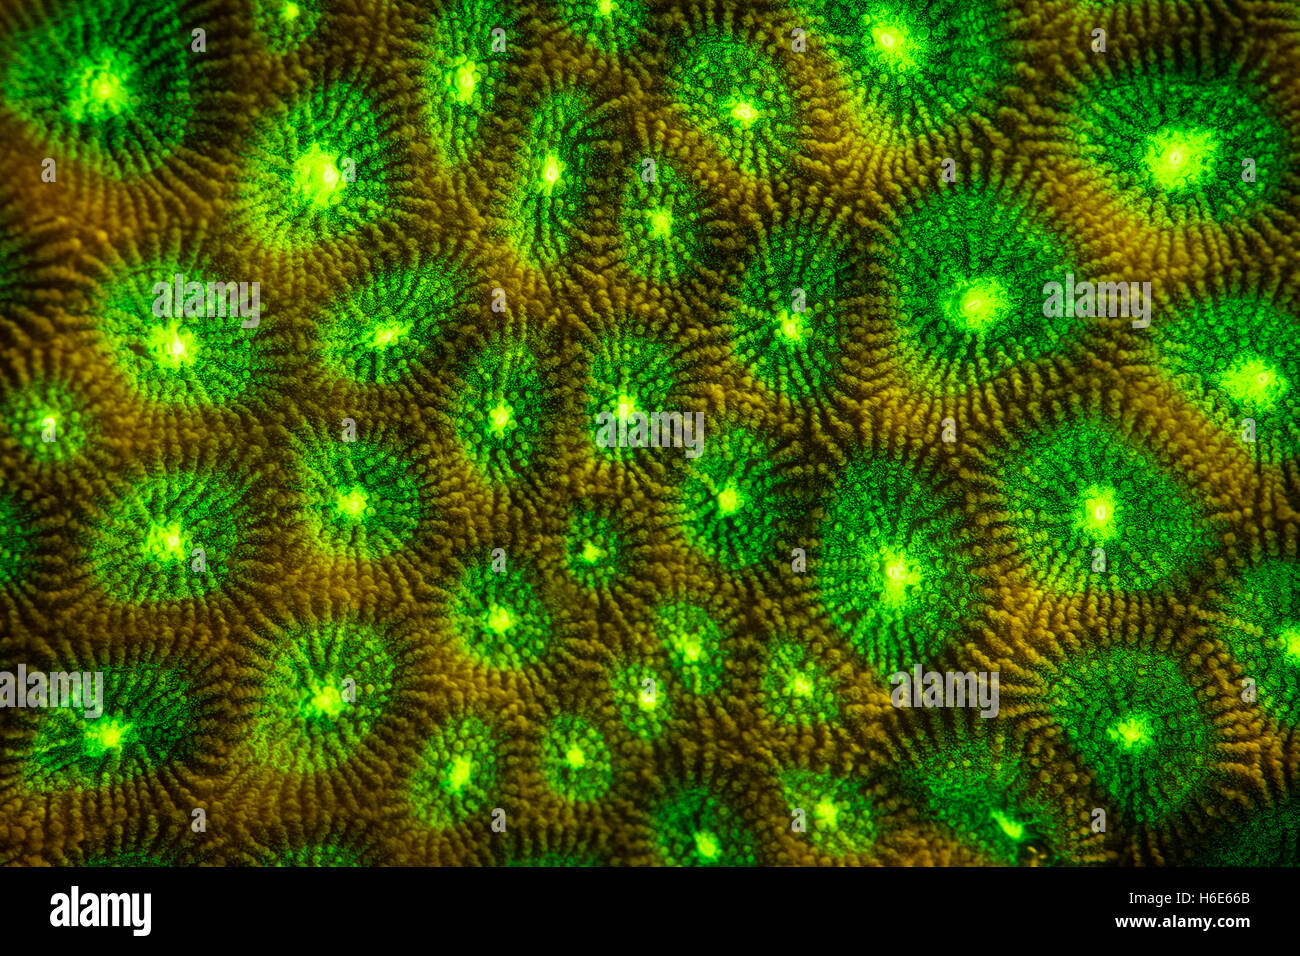 Eine Koralle Kolonie zeigt Fluoreszenz an einem Riff in Raja Ampat. Warum viele Meeresorganismen fluoreszieren ist nicht vollständig geklärt. Stockfoto